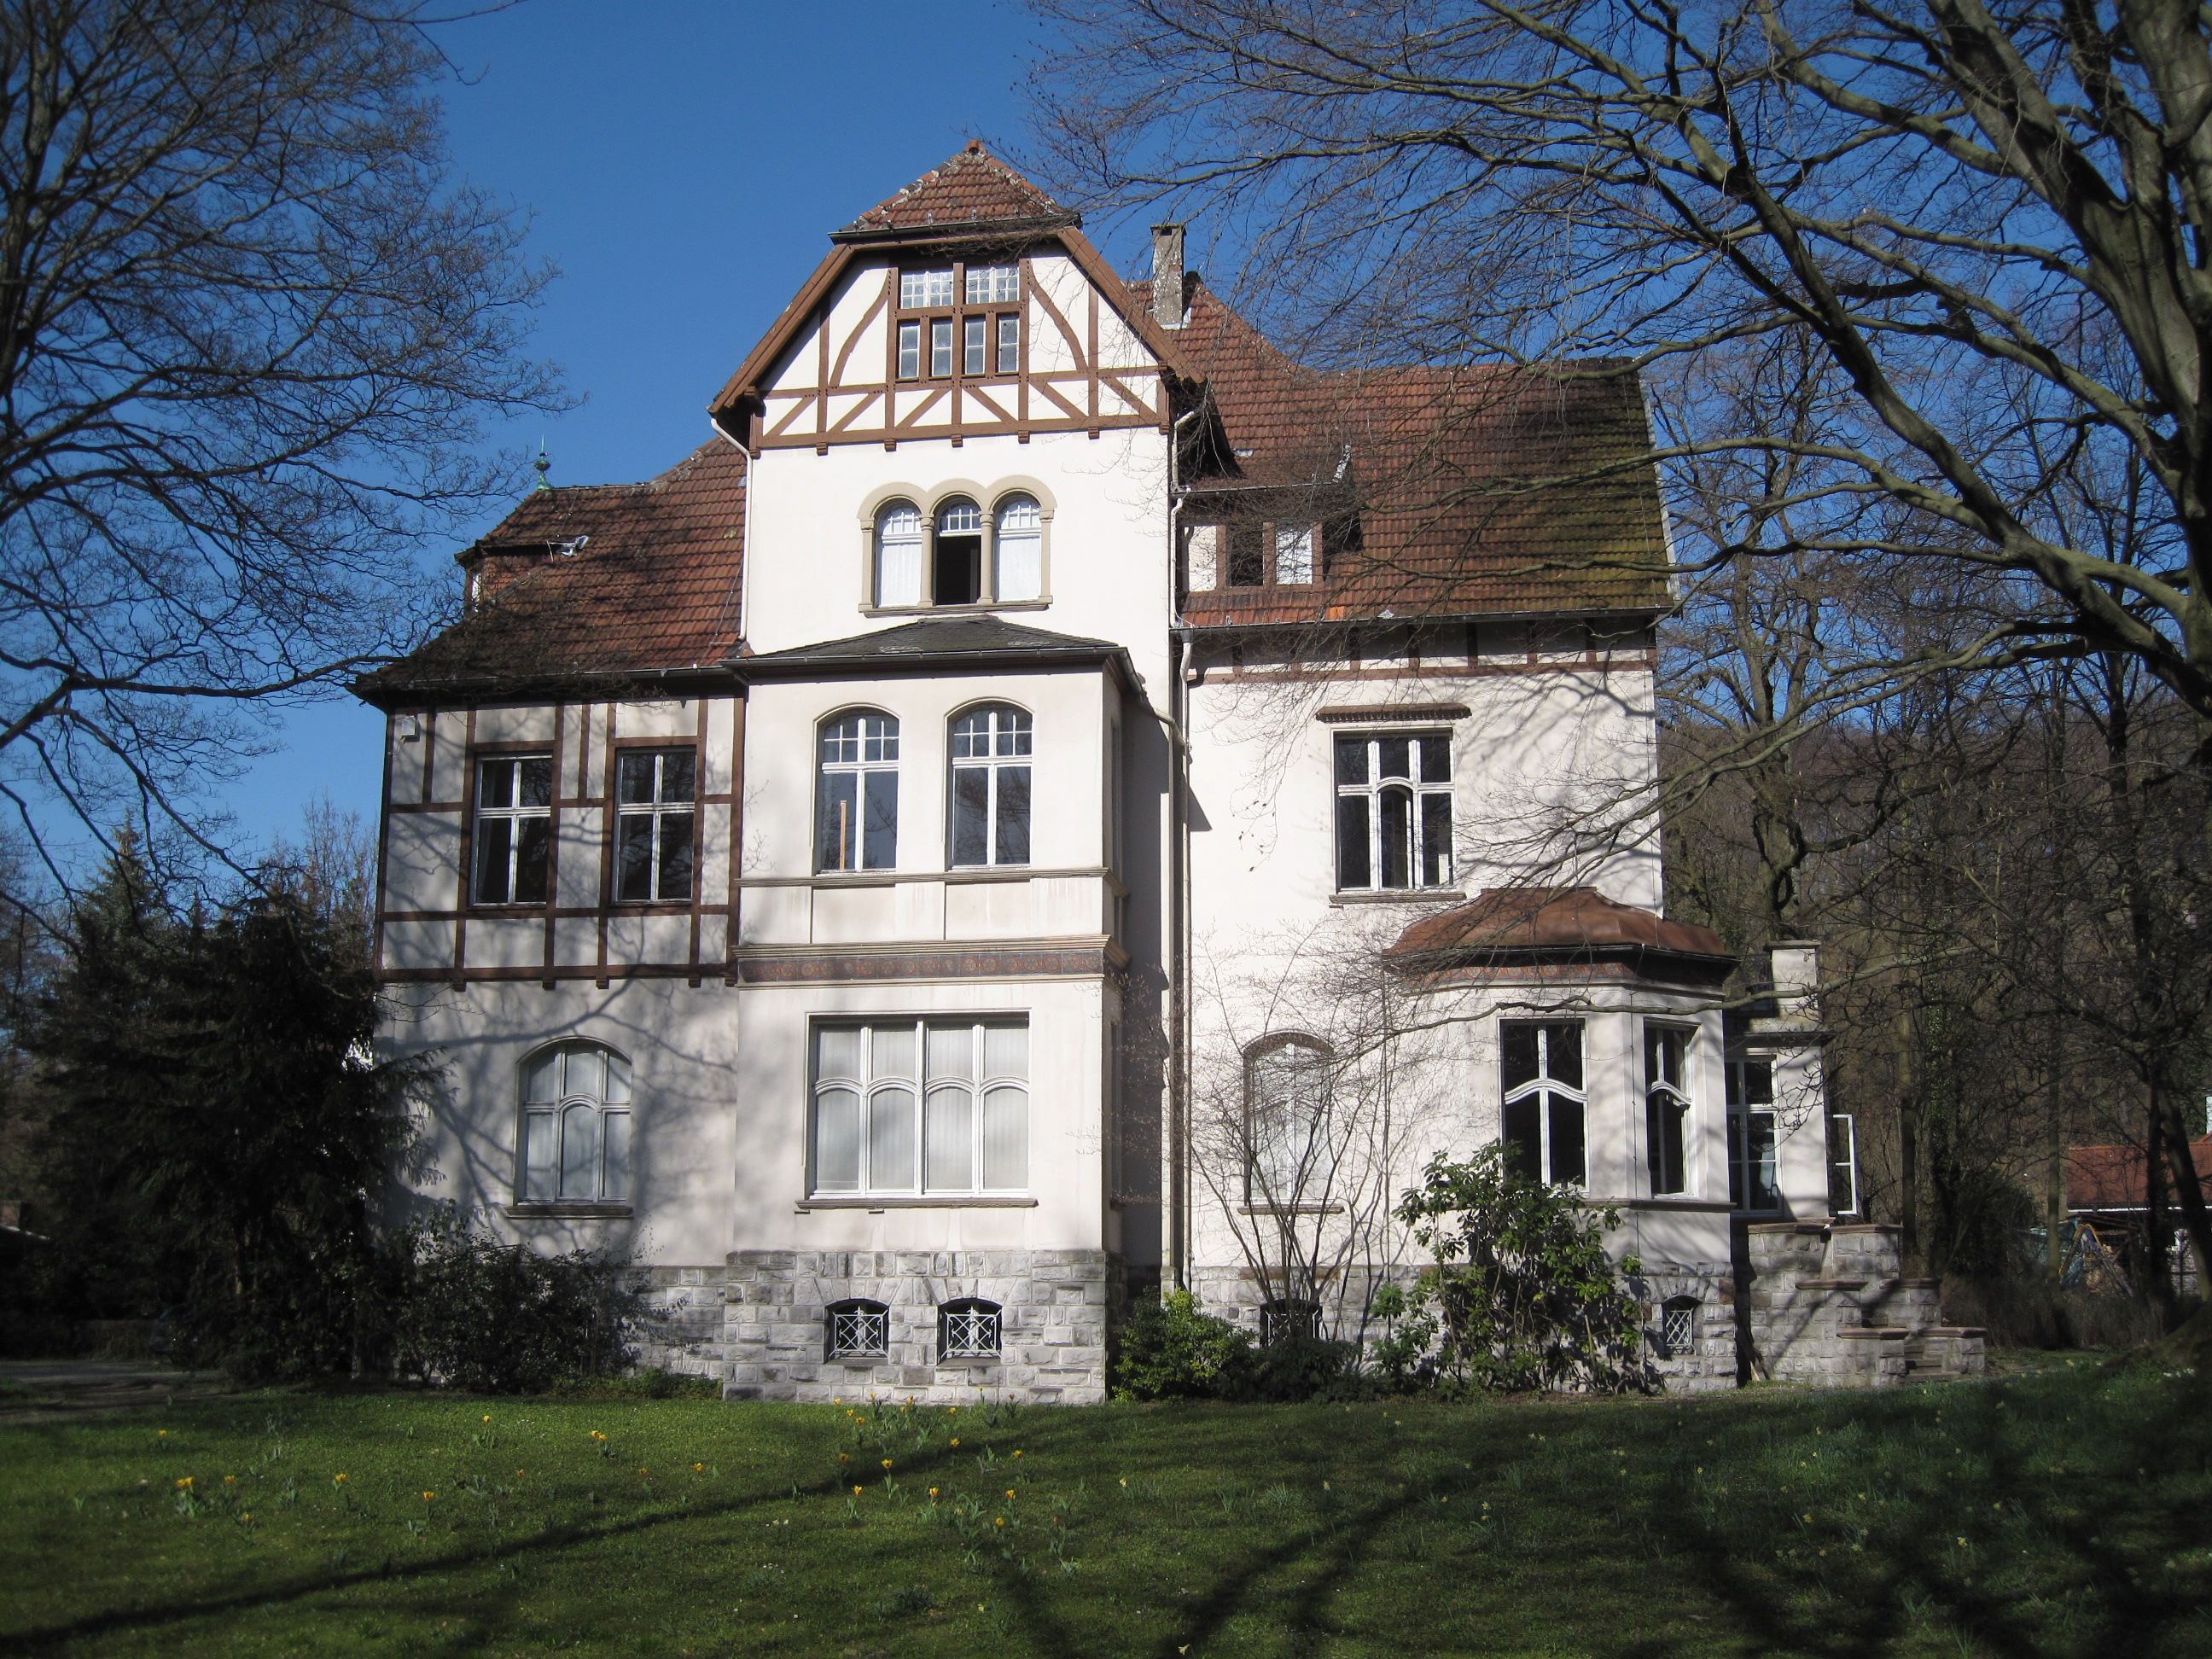 Felsenmeermuseum, Hemer